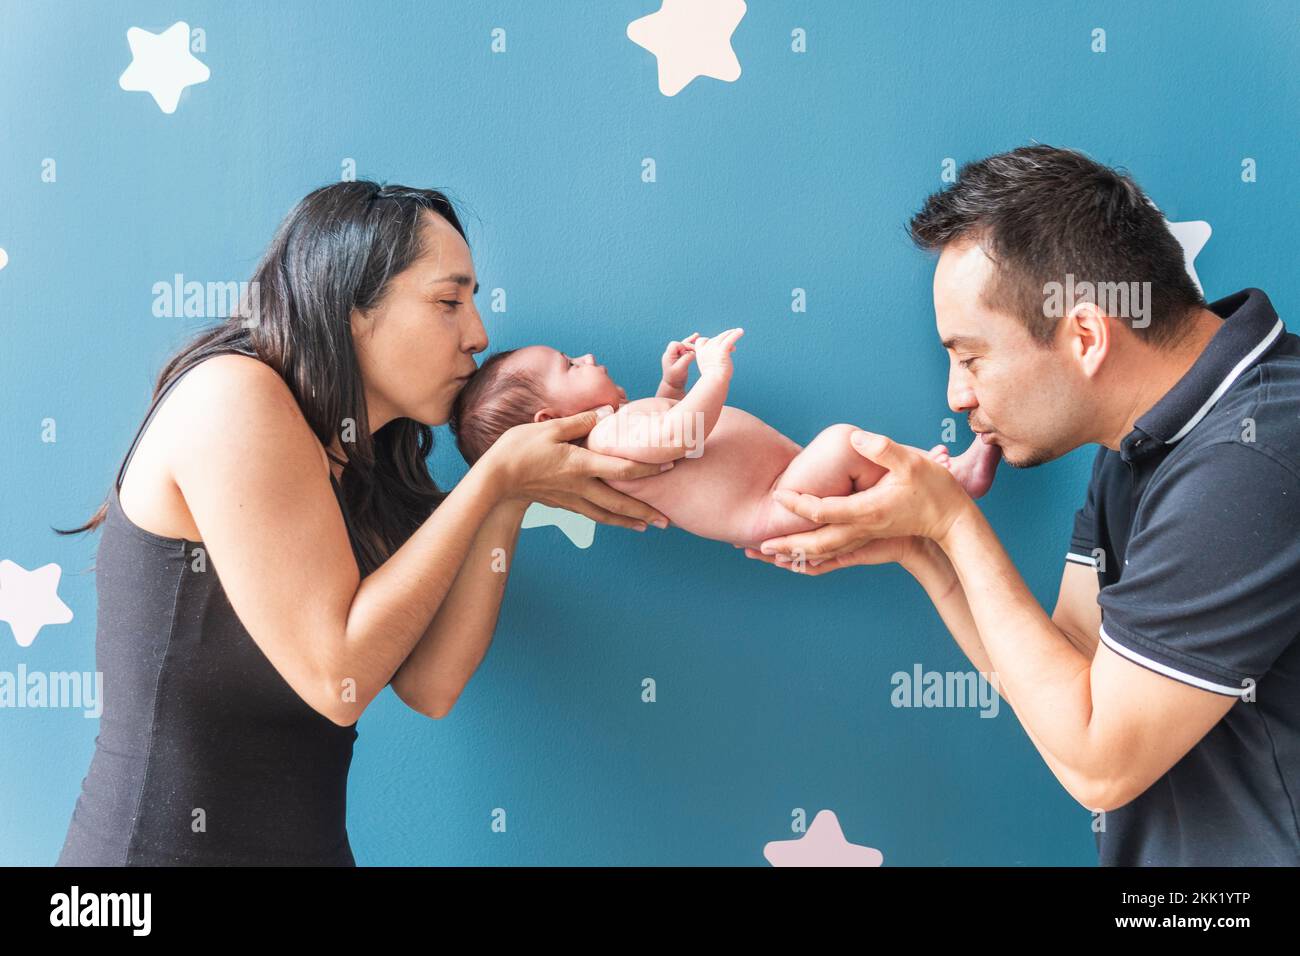 Lateinamerikanische Mutter und Vater halten ihr Baby in den Händen und geben ihm einen Kuss Stockfoto